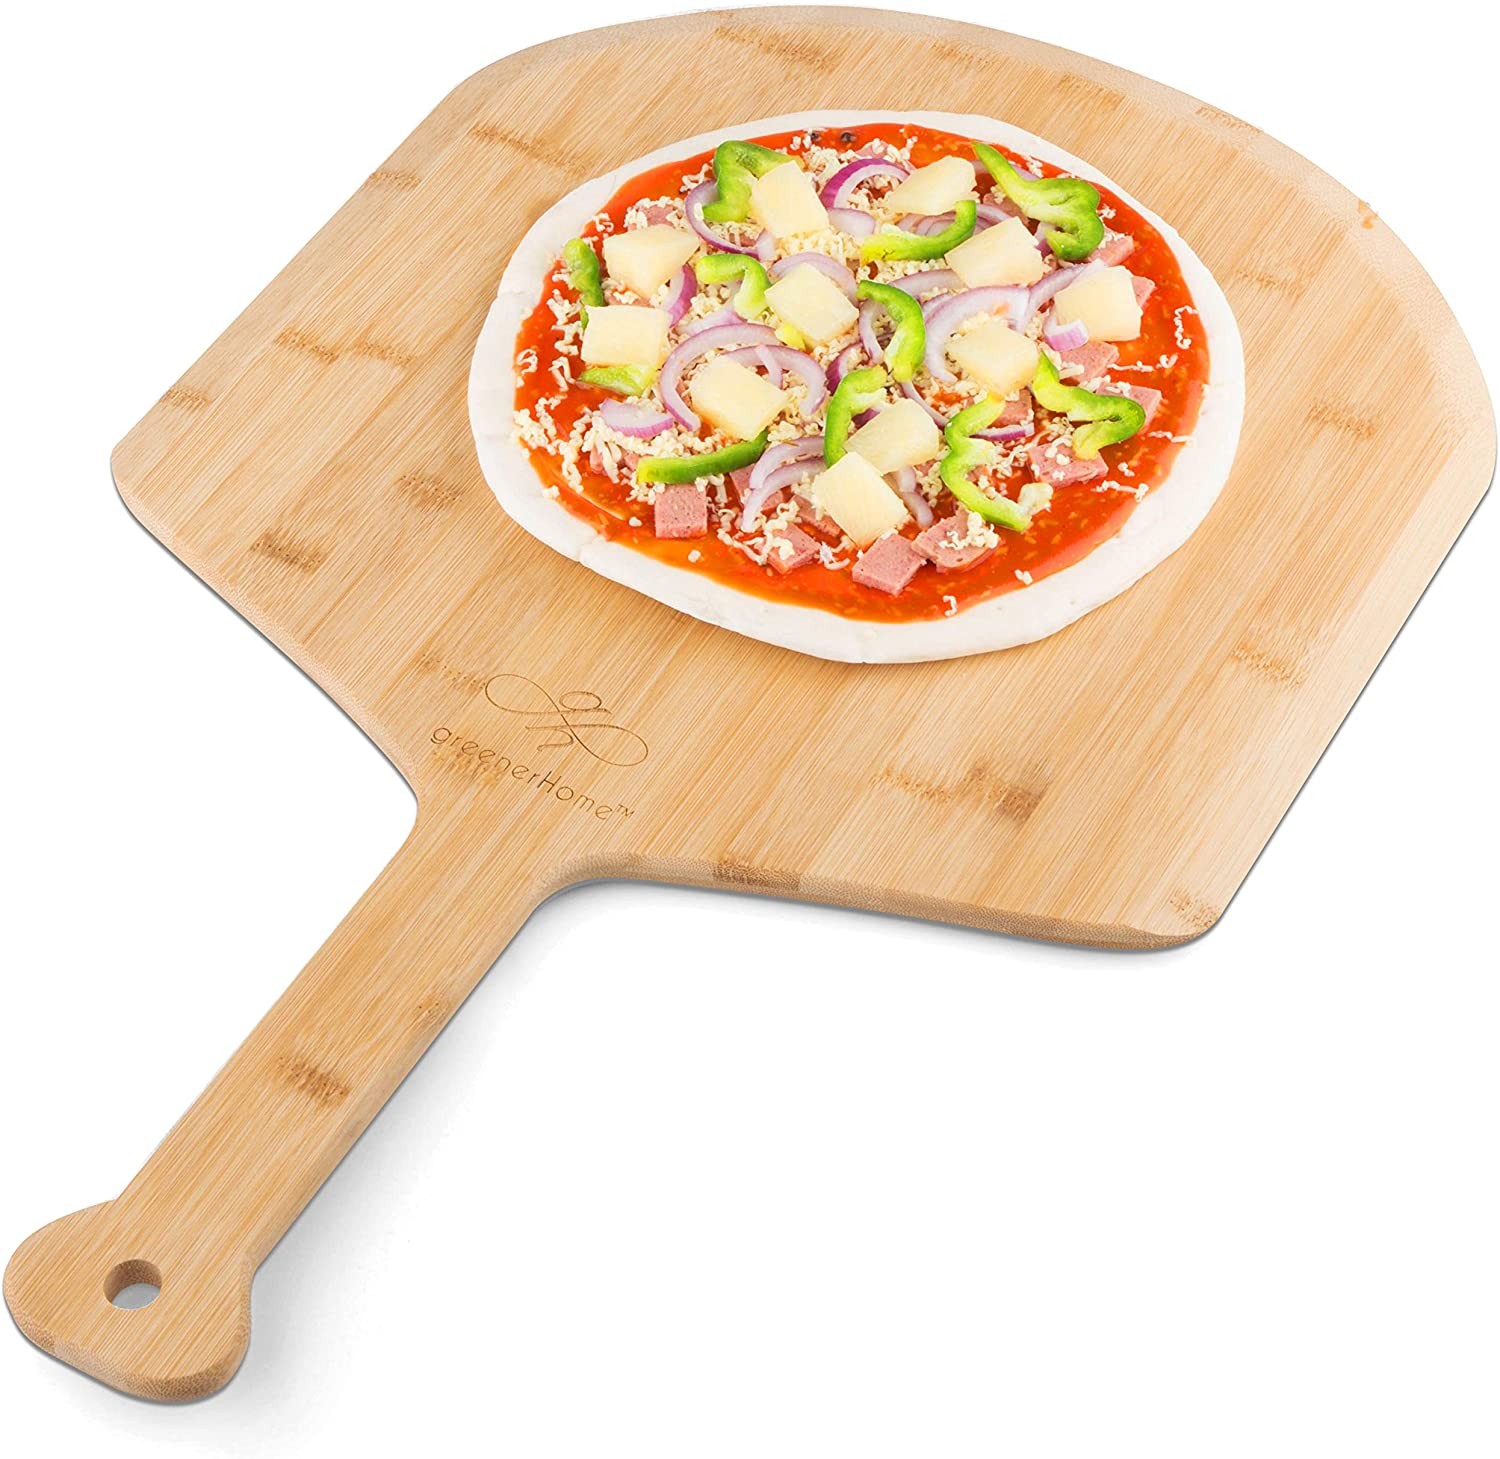 blog-pizza-turning-peel-metal-pizza-peel-turning-peel-turning-pizza-peel-perforated-pizza-peel-turner-ooni-12-inch-pizza-peel-pizza-peel-wooden-12-inch-pizza-peel-metal-pizza-peel